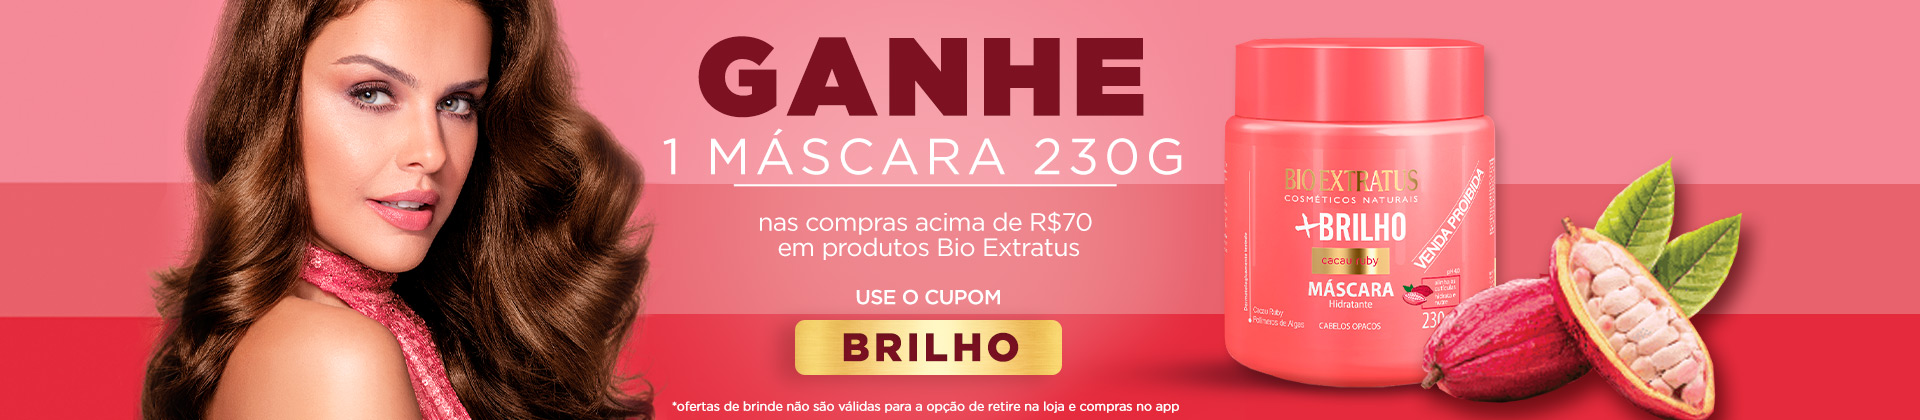 Bio Extratus - Brinde + Brilho